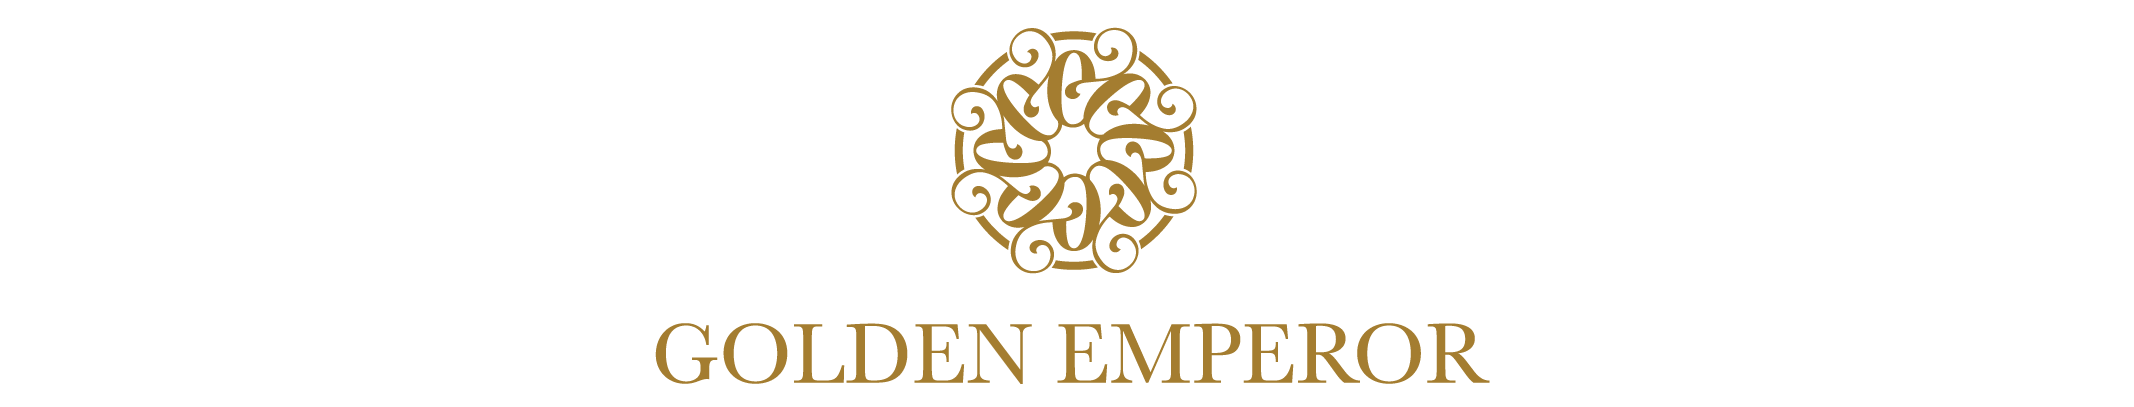 Golden Emperor Properties (Vietnam) Limited